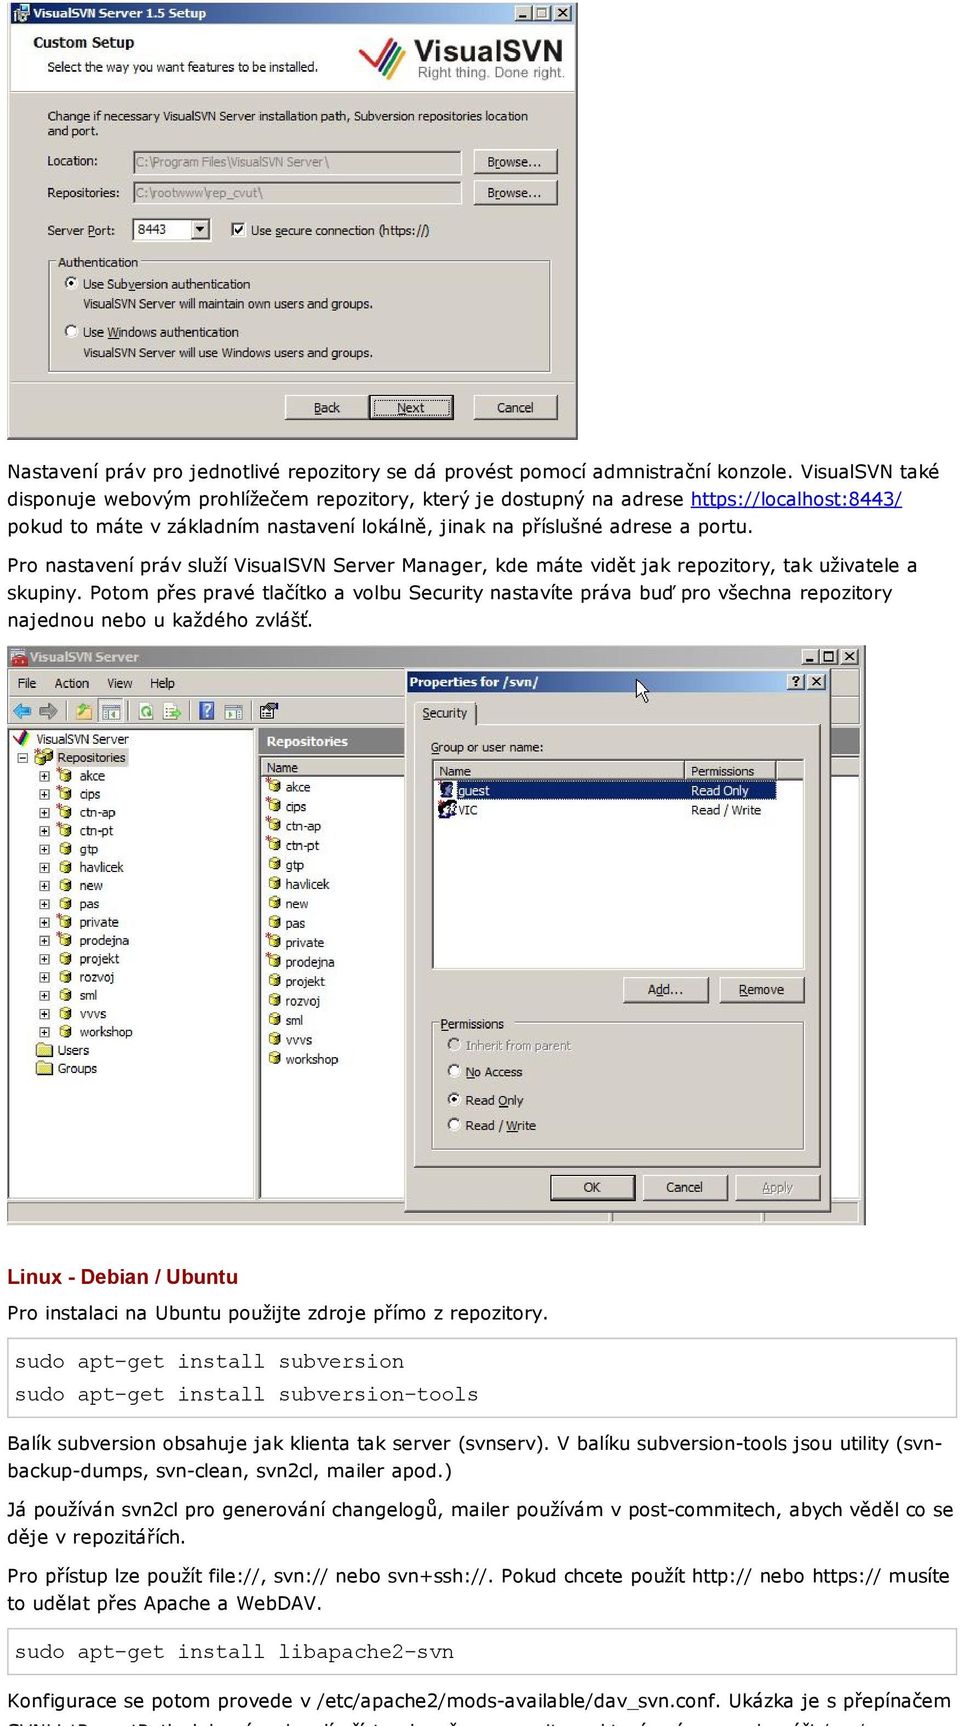 Pro nastavení práv služí VisualSVN Server Manager, kde máte vidět jak repozitory, tak uživatele a skupiny.